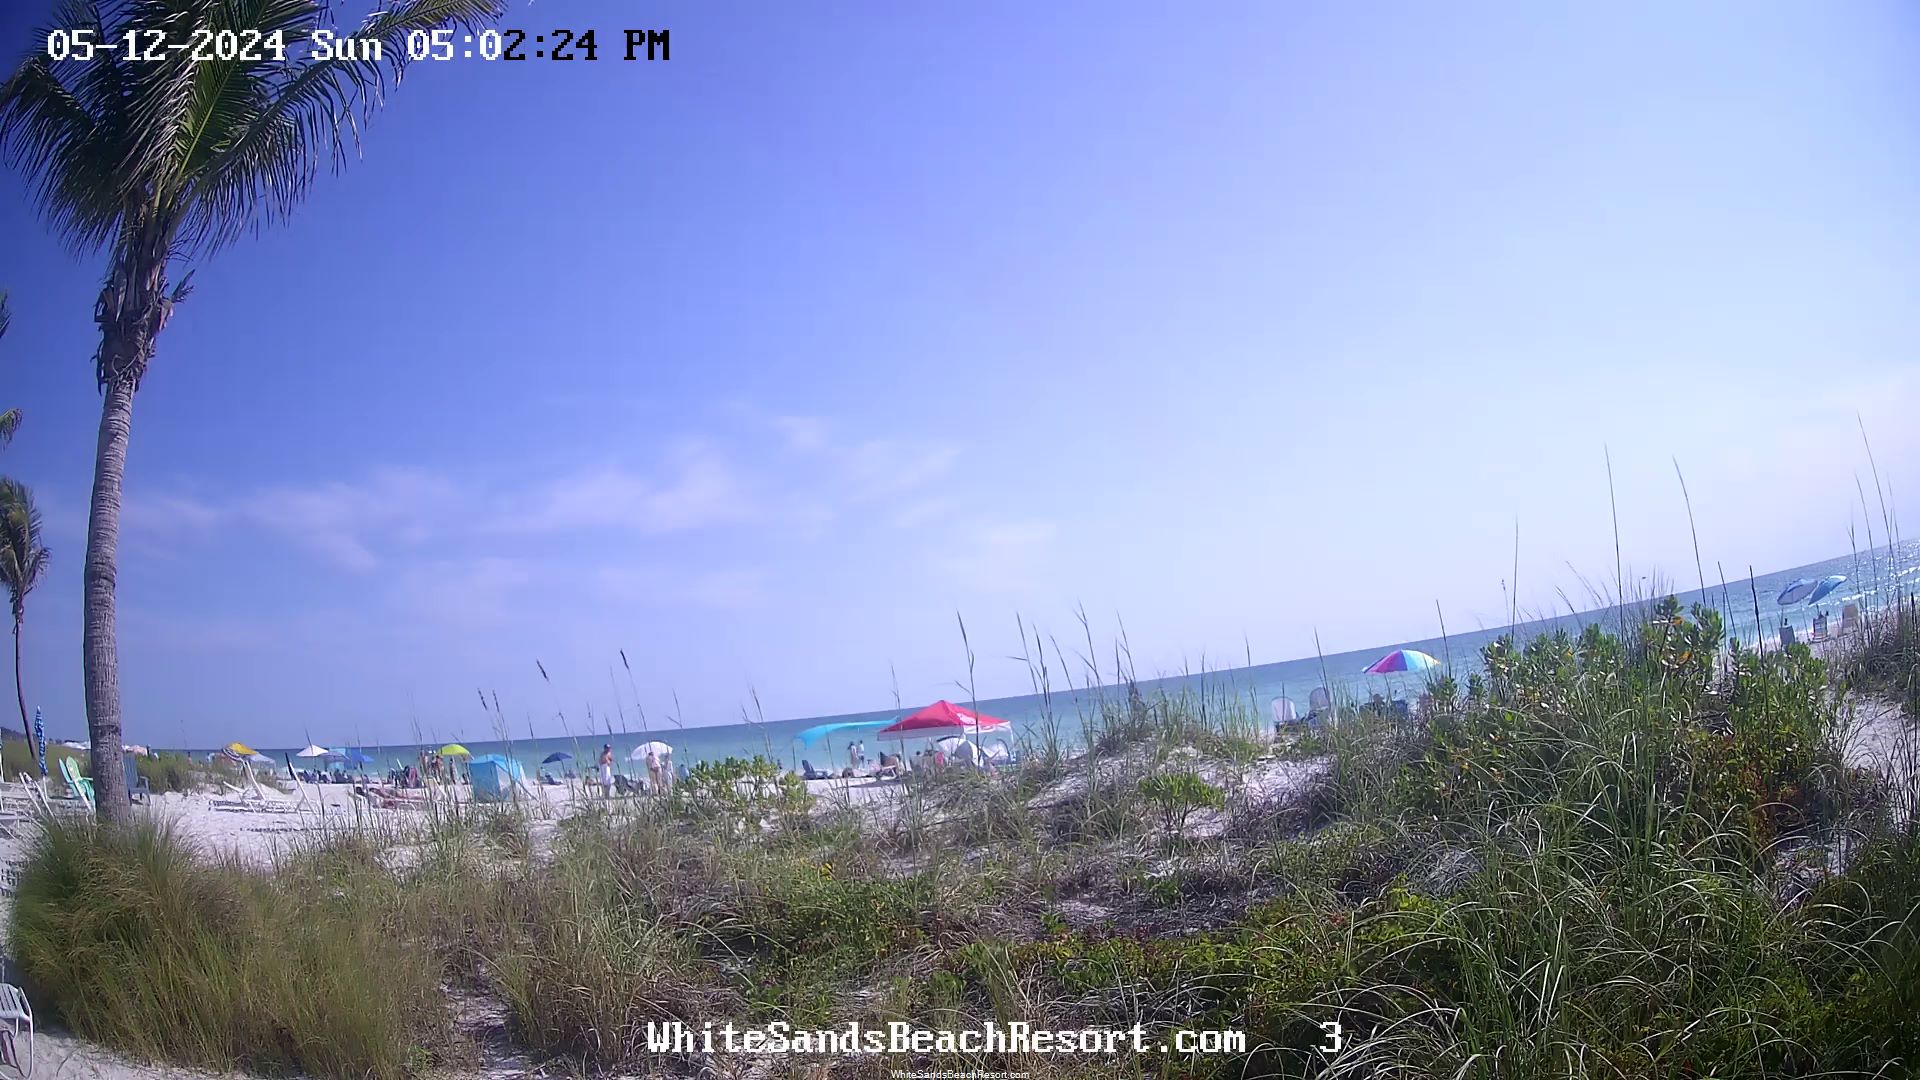 Holmes Beach, Florida Vie. 16:56